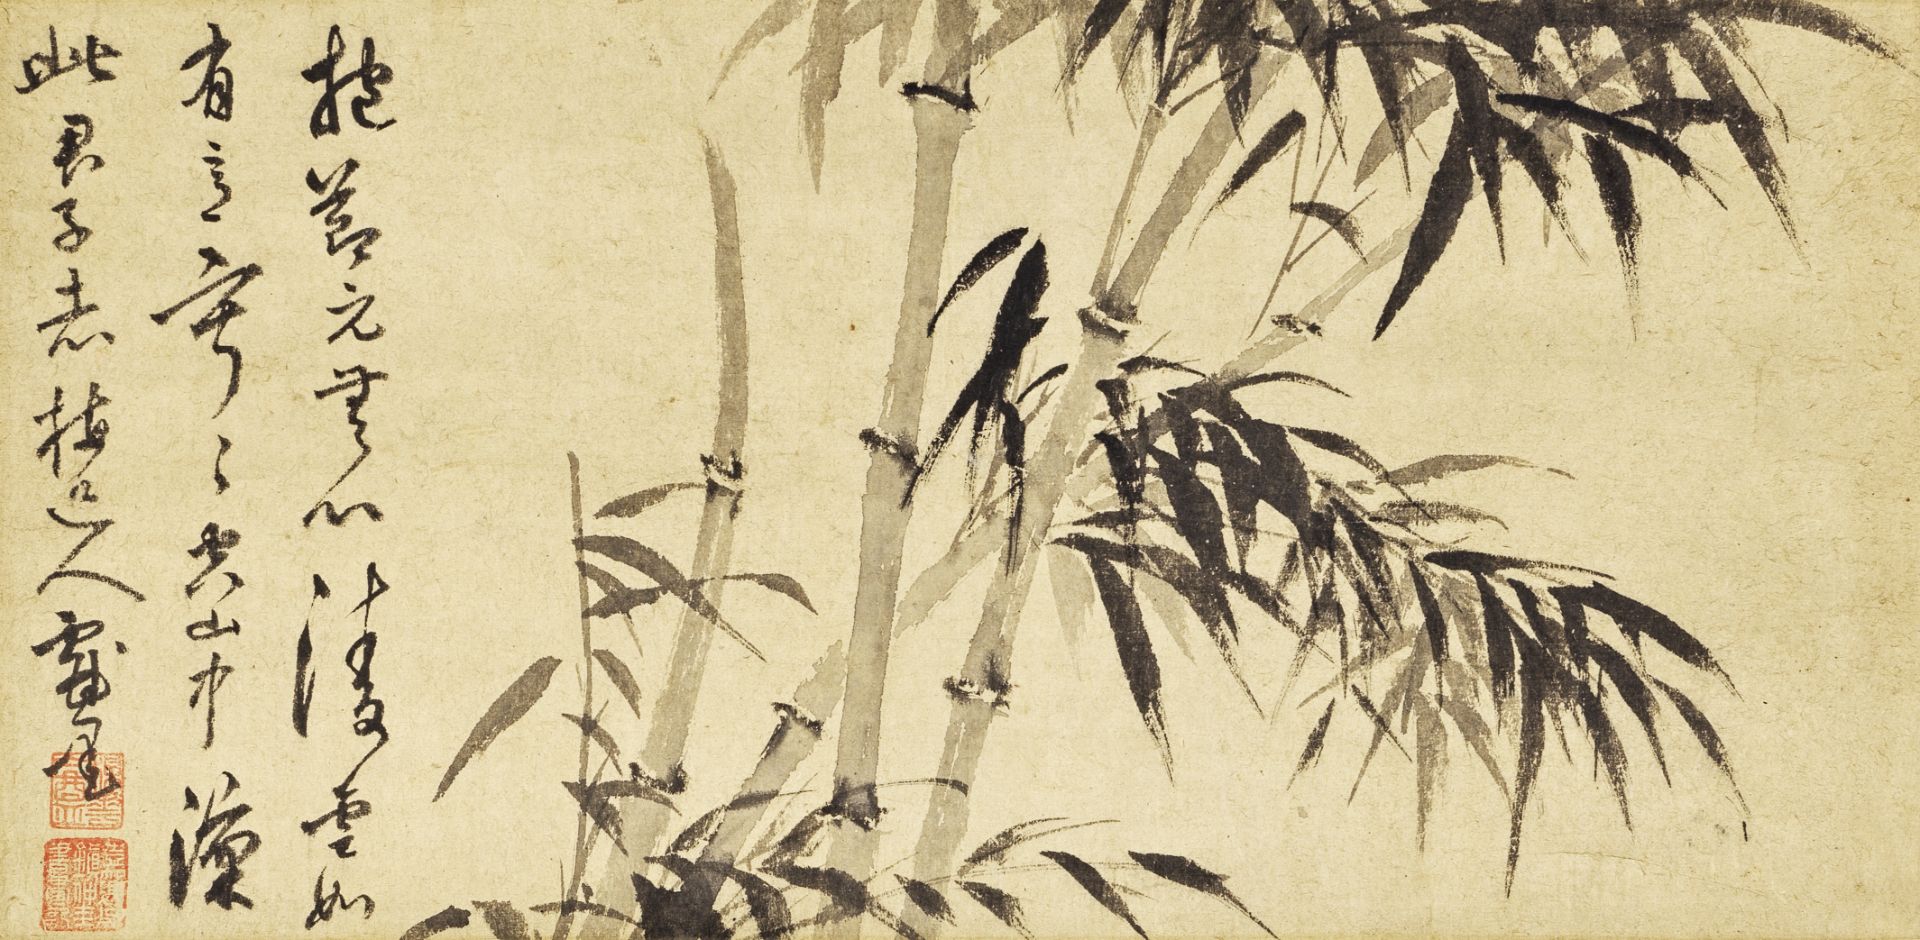 FOLLOWER OF WU ZHEN (1280-1354) Bamboo